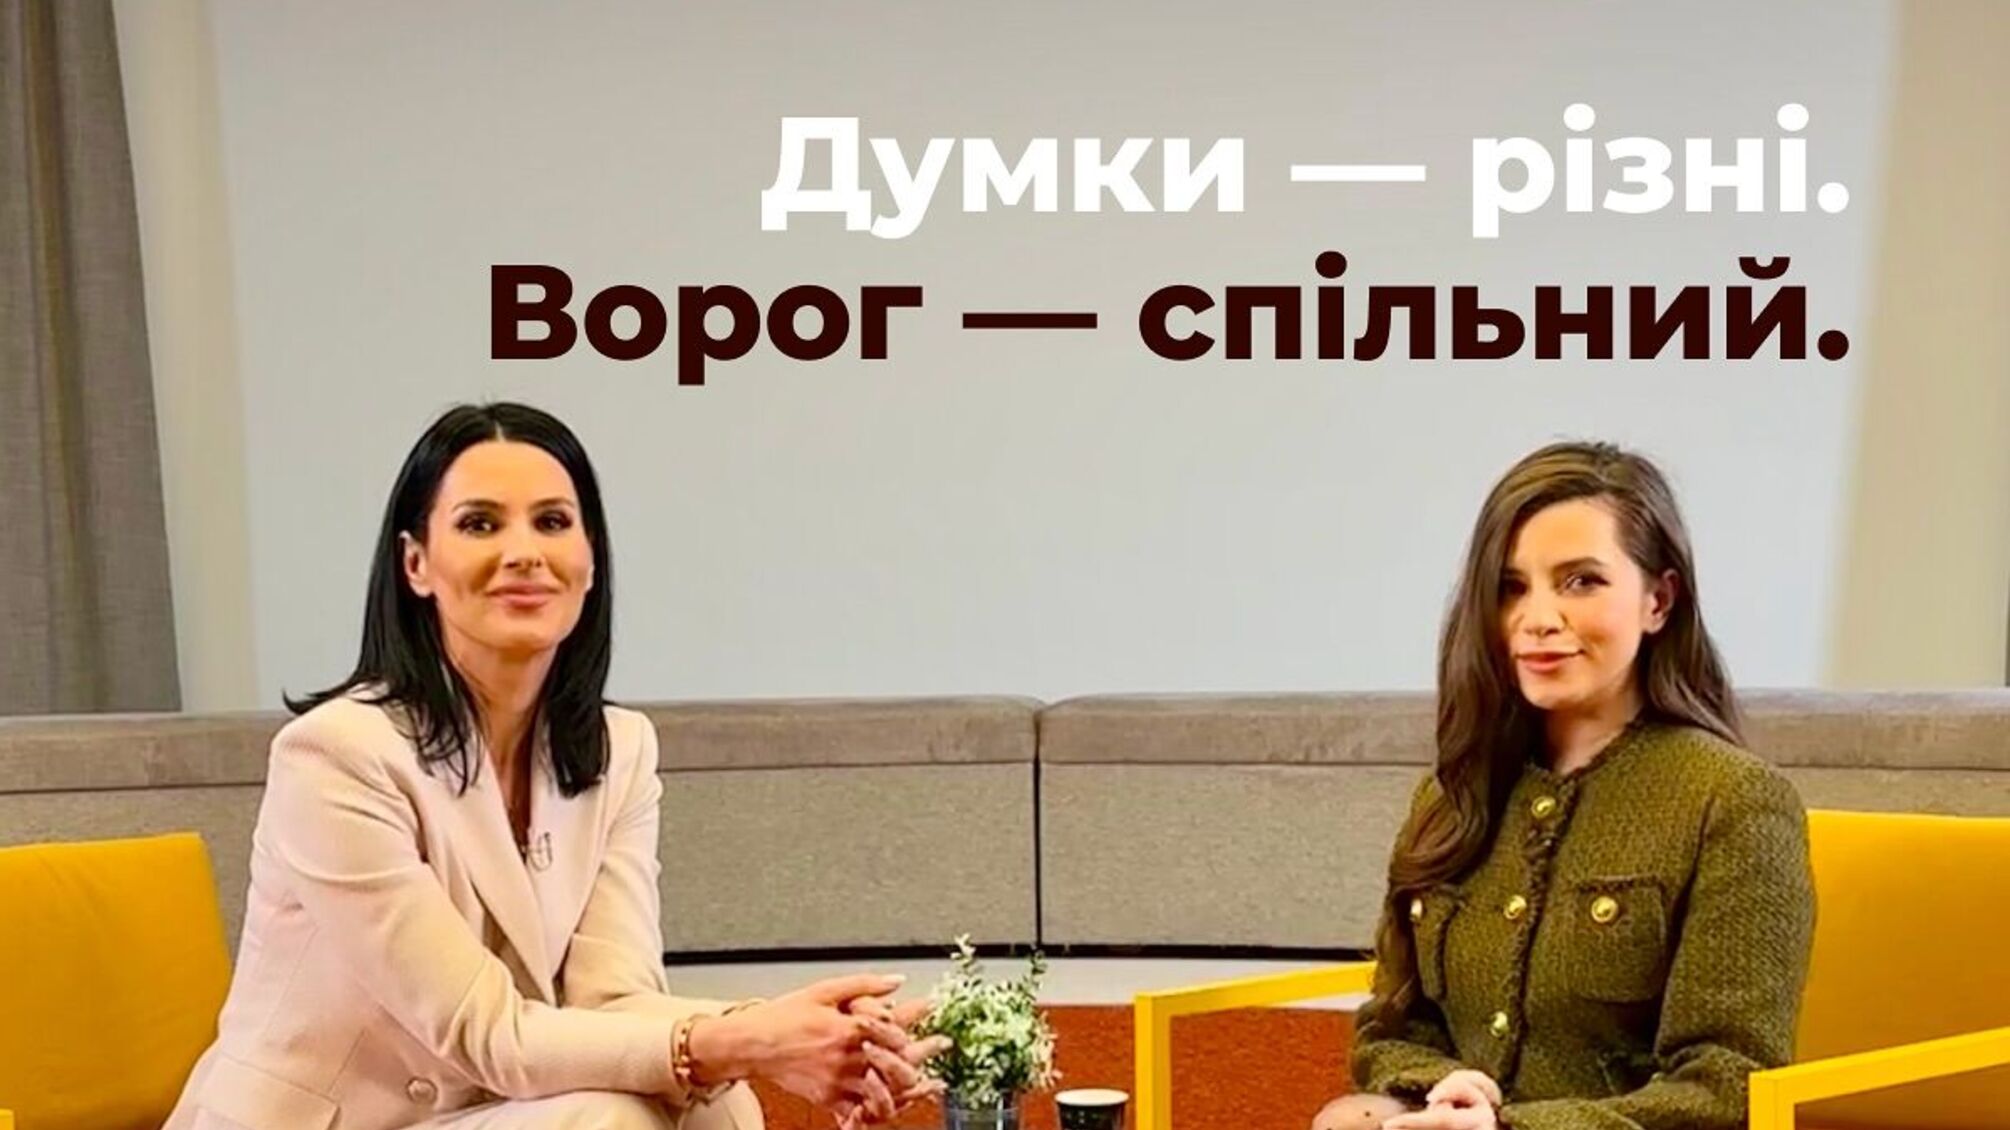 Кристина Соловий покажет продолжение скандальной дискуссии с Ефросининой в обмен на 1 миллион гривен